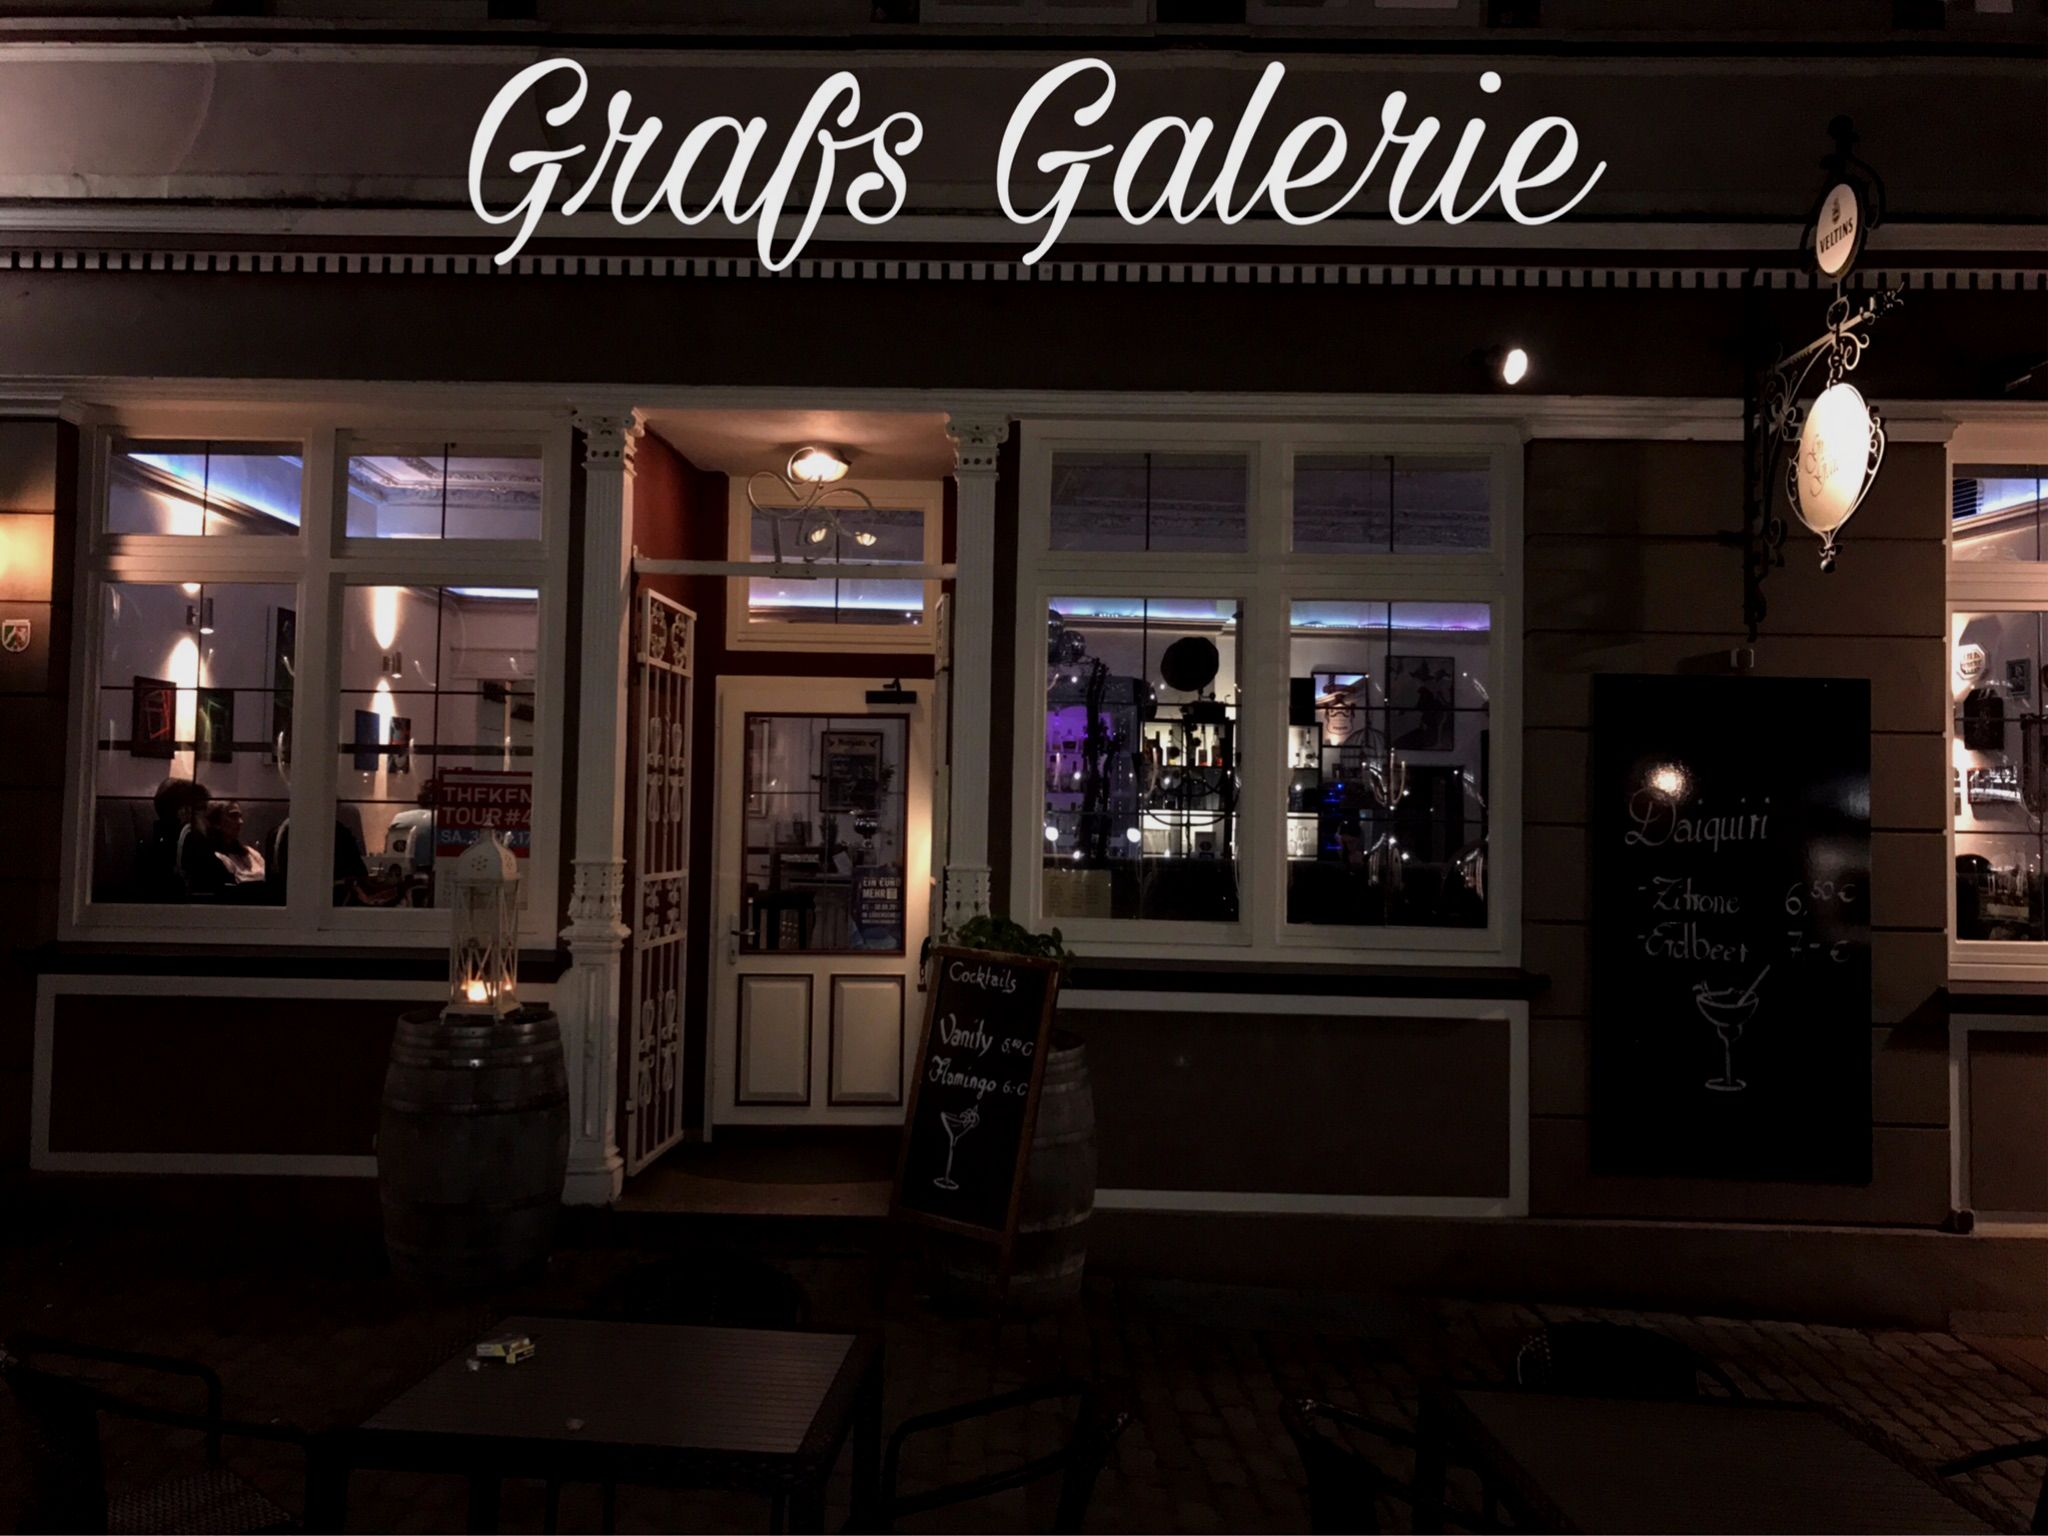 Grafs Galerie